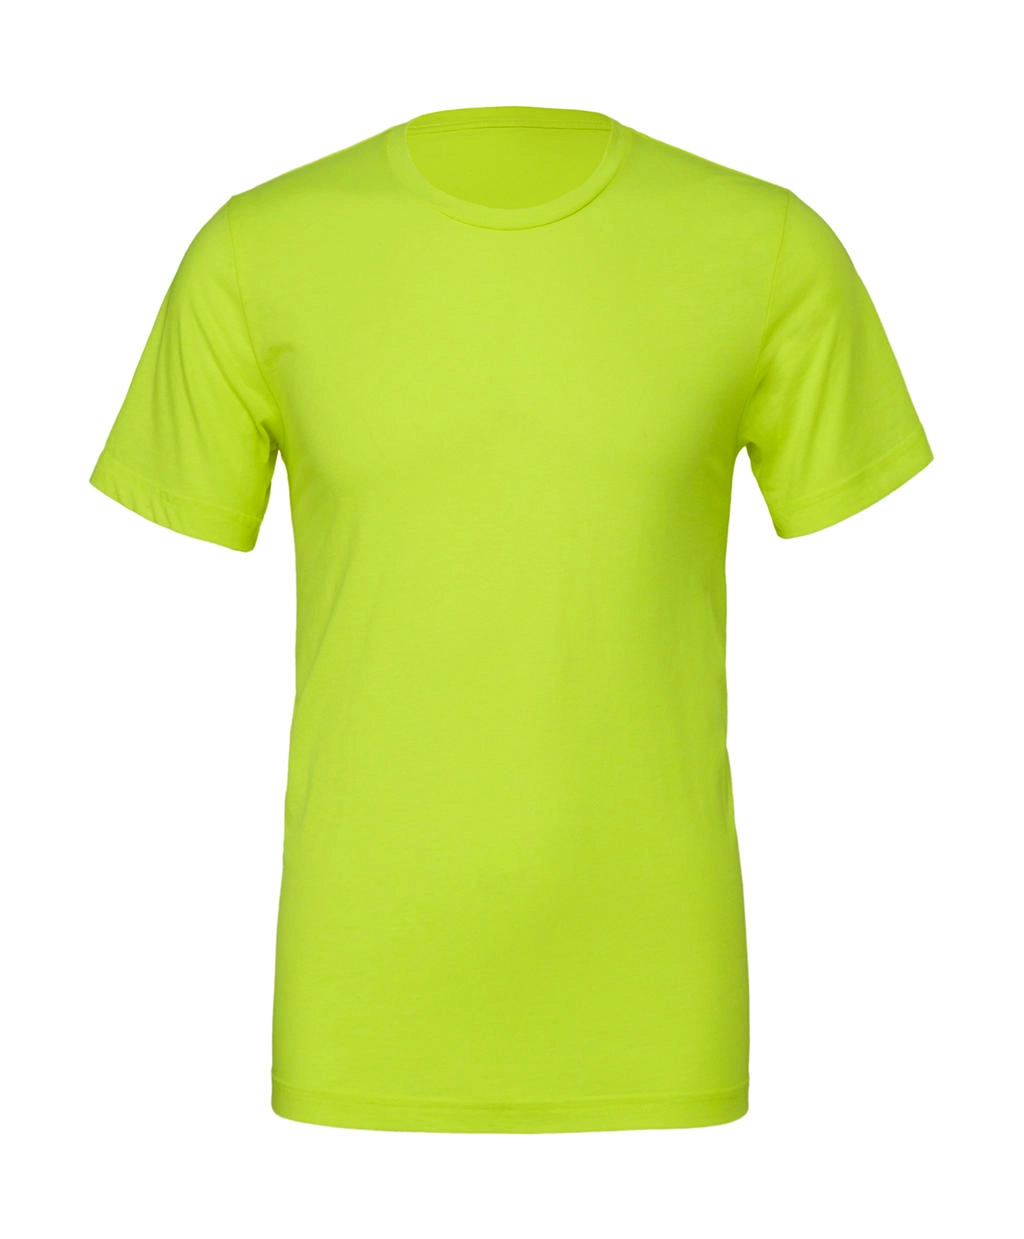 Unisex Poly-Cotton T-Shirt zum Besticken und Bedrucken in der Farbe Neon Yellow mit Ihren Logo, Schriftzug oder Motiv.